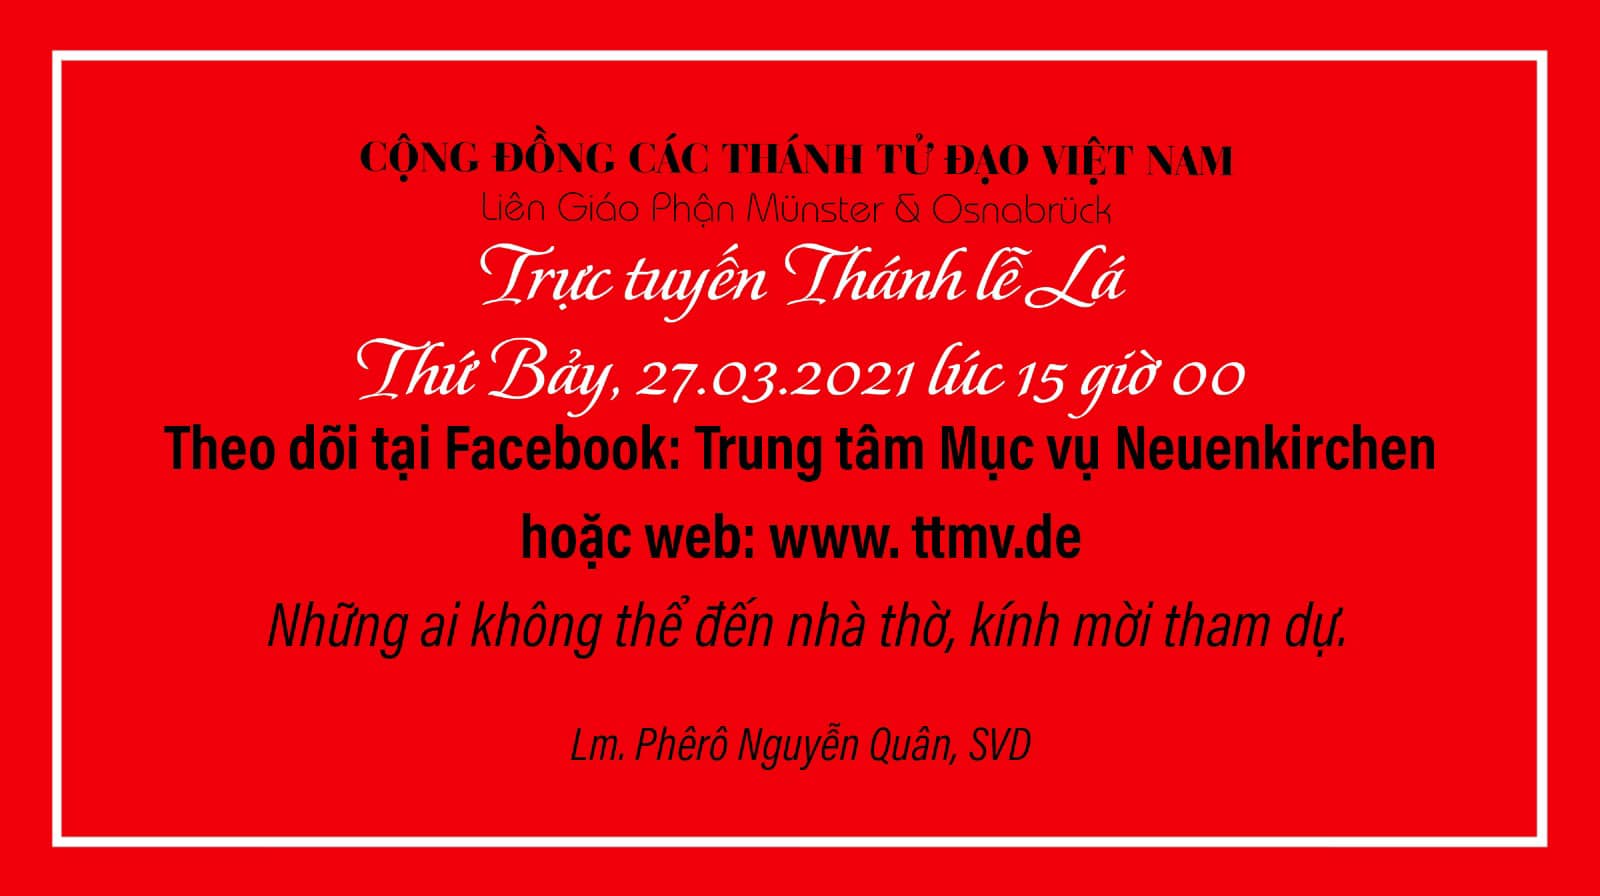 Thanh Le La